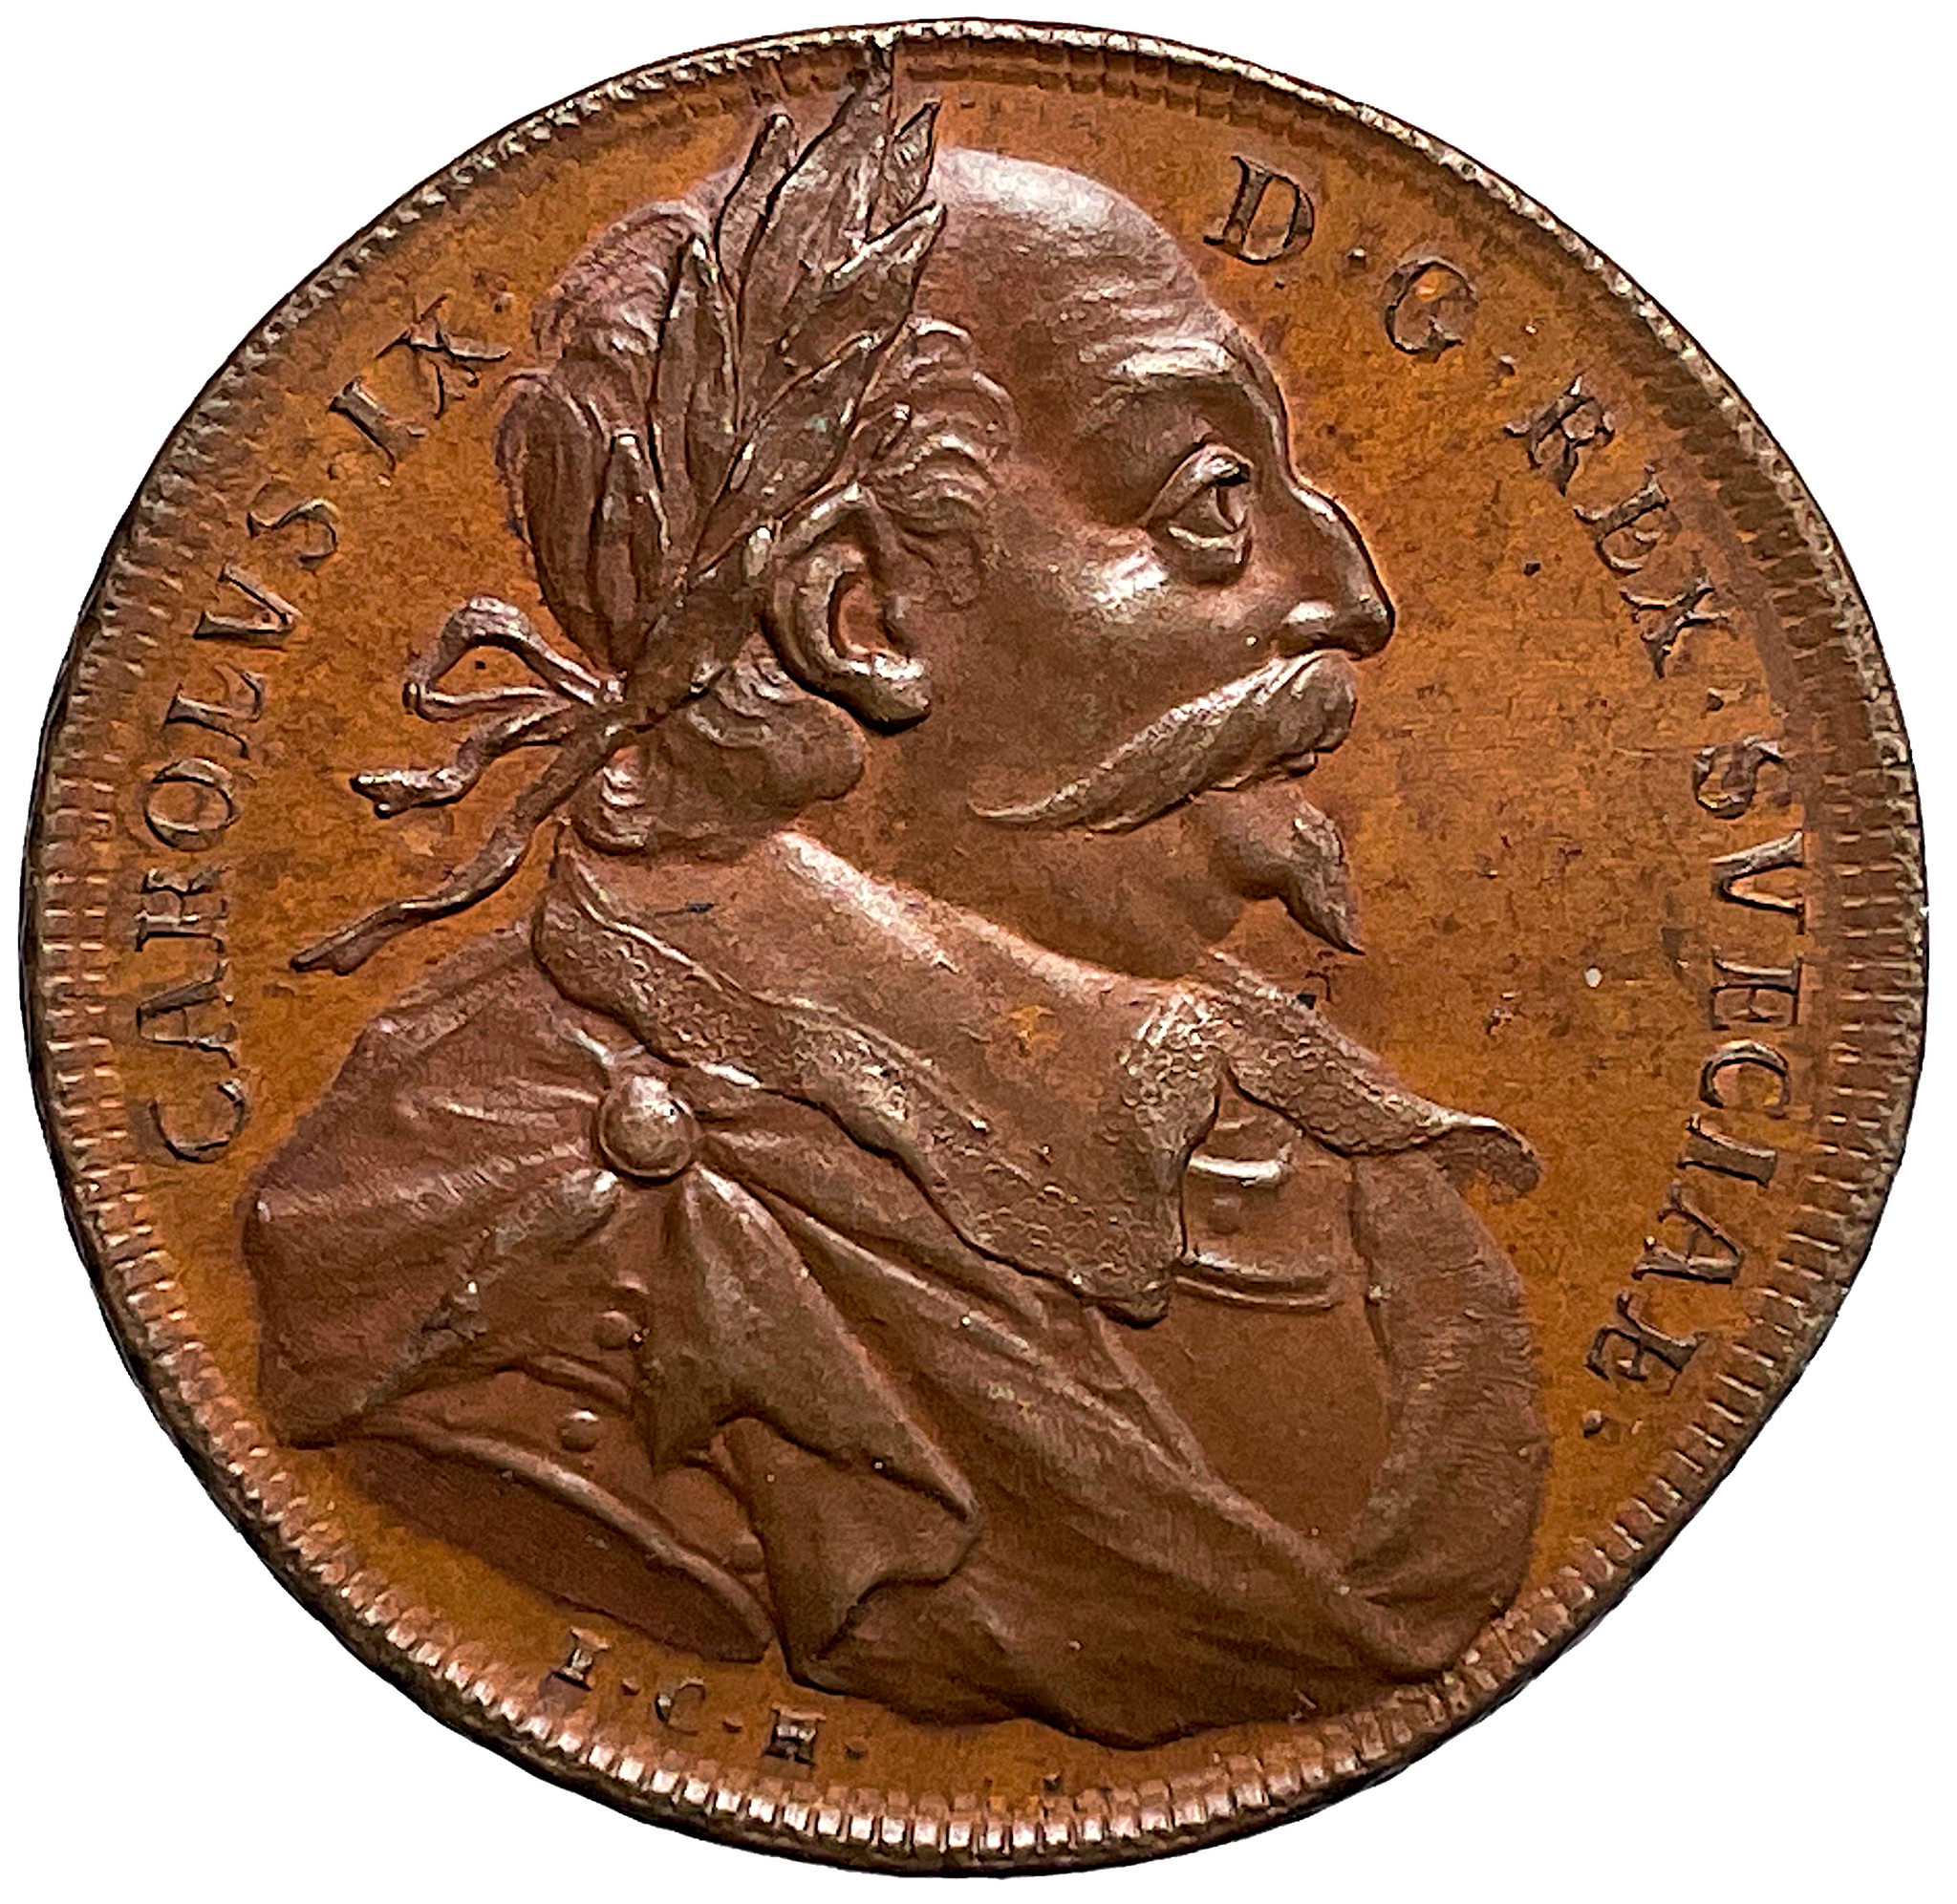 Hedlingers regentlängd - Karl IX av Johann Carl Hedlinger präglad på myntämne till 1 Öre SM med rutad rand